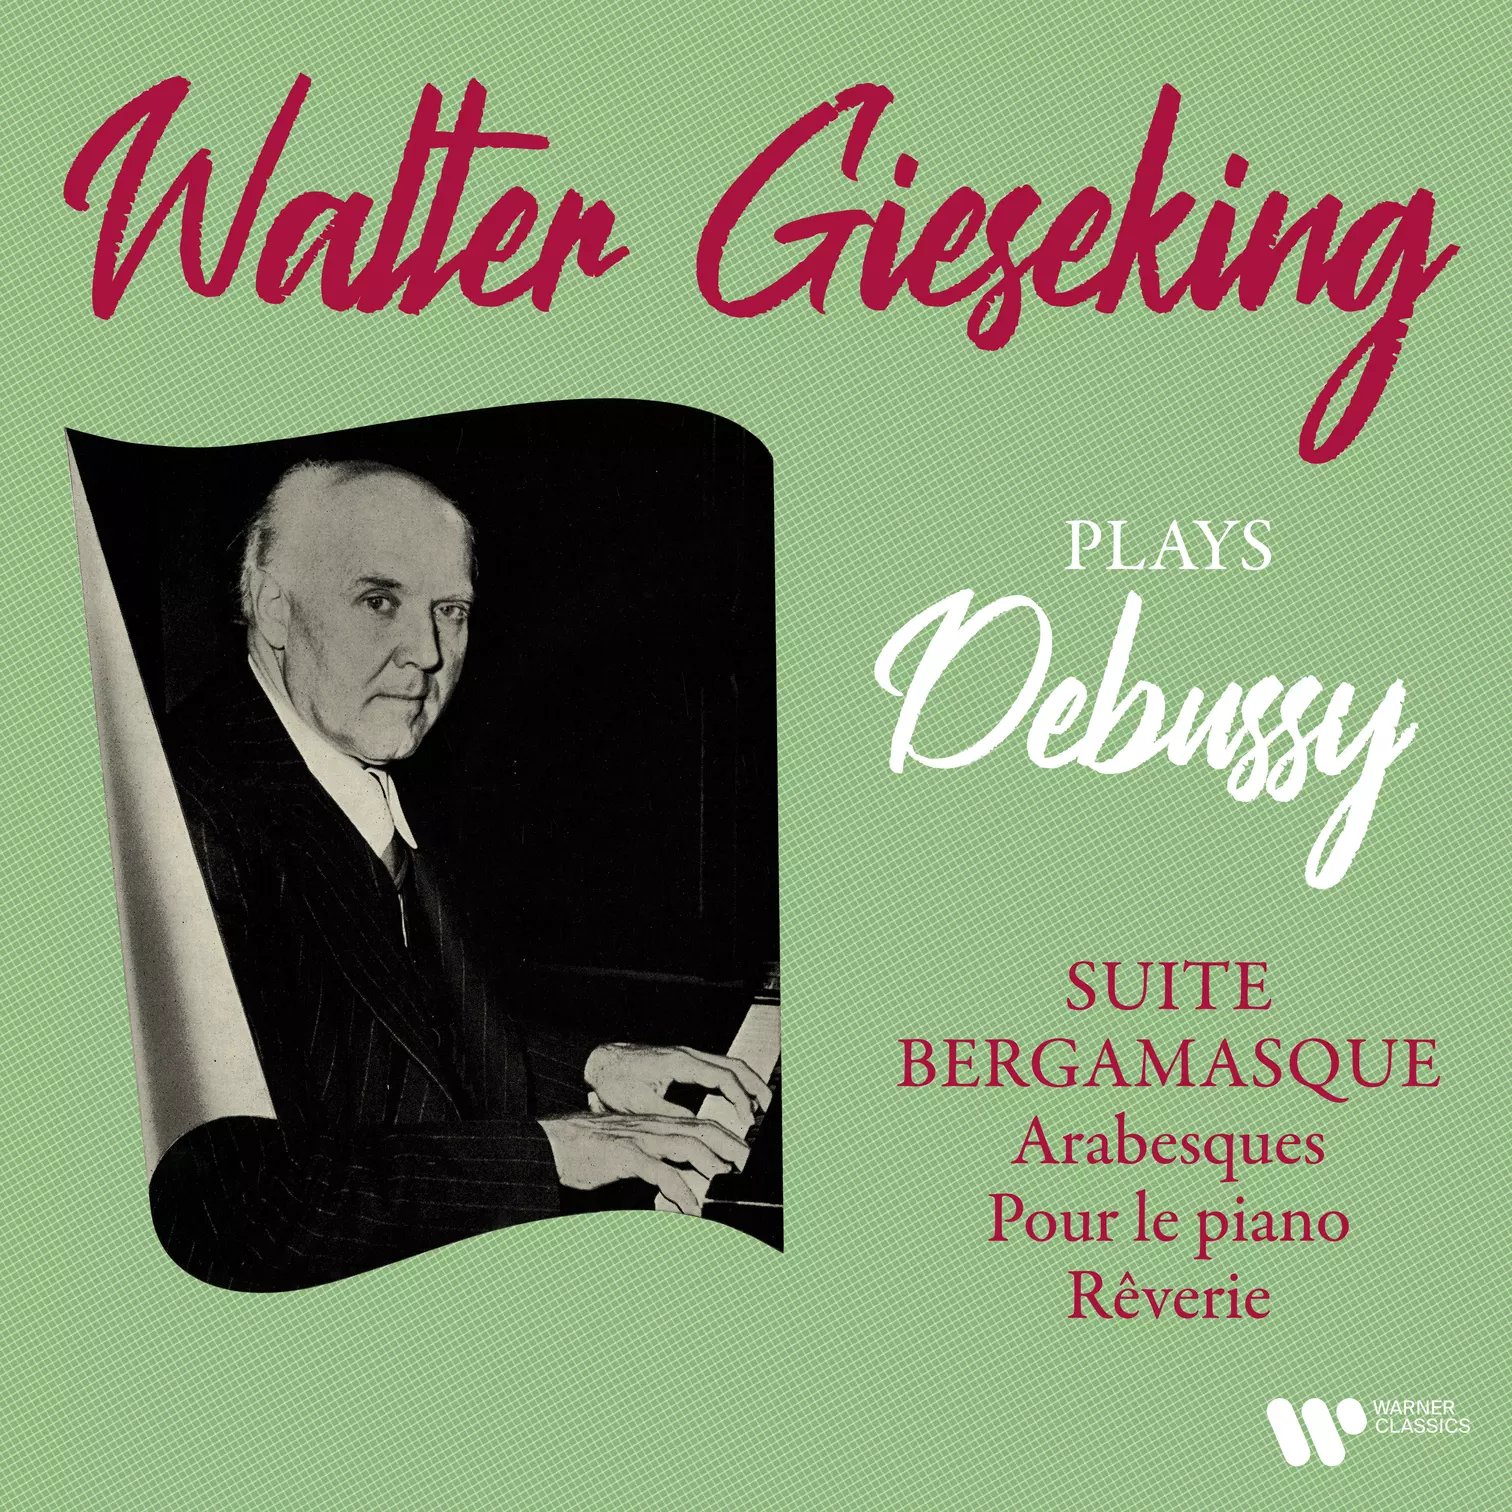 Debussy: Suite bergamasque, Arabesques, Pour le piano & Rêverie